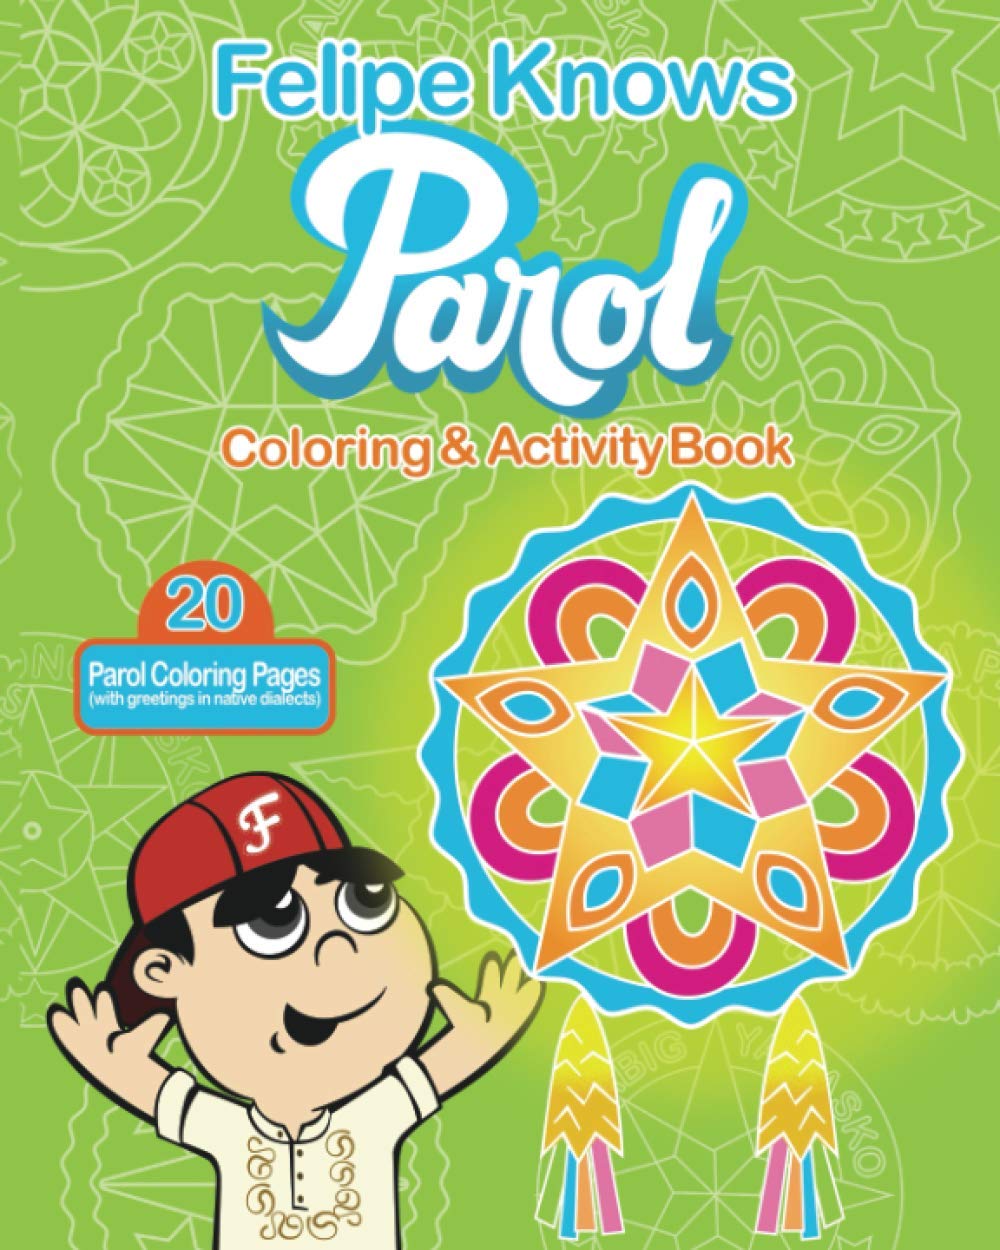 Felipe Knows Parol: Philippine Lantern Coloring Book for Filipino Children